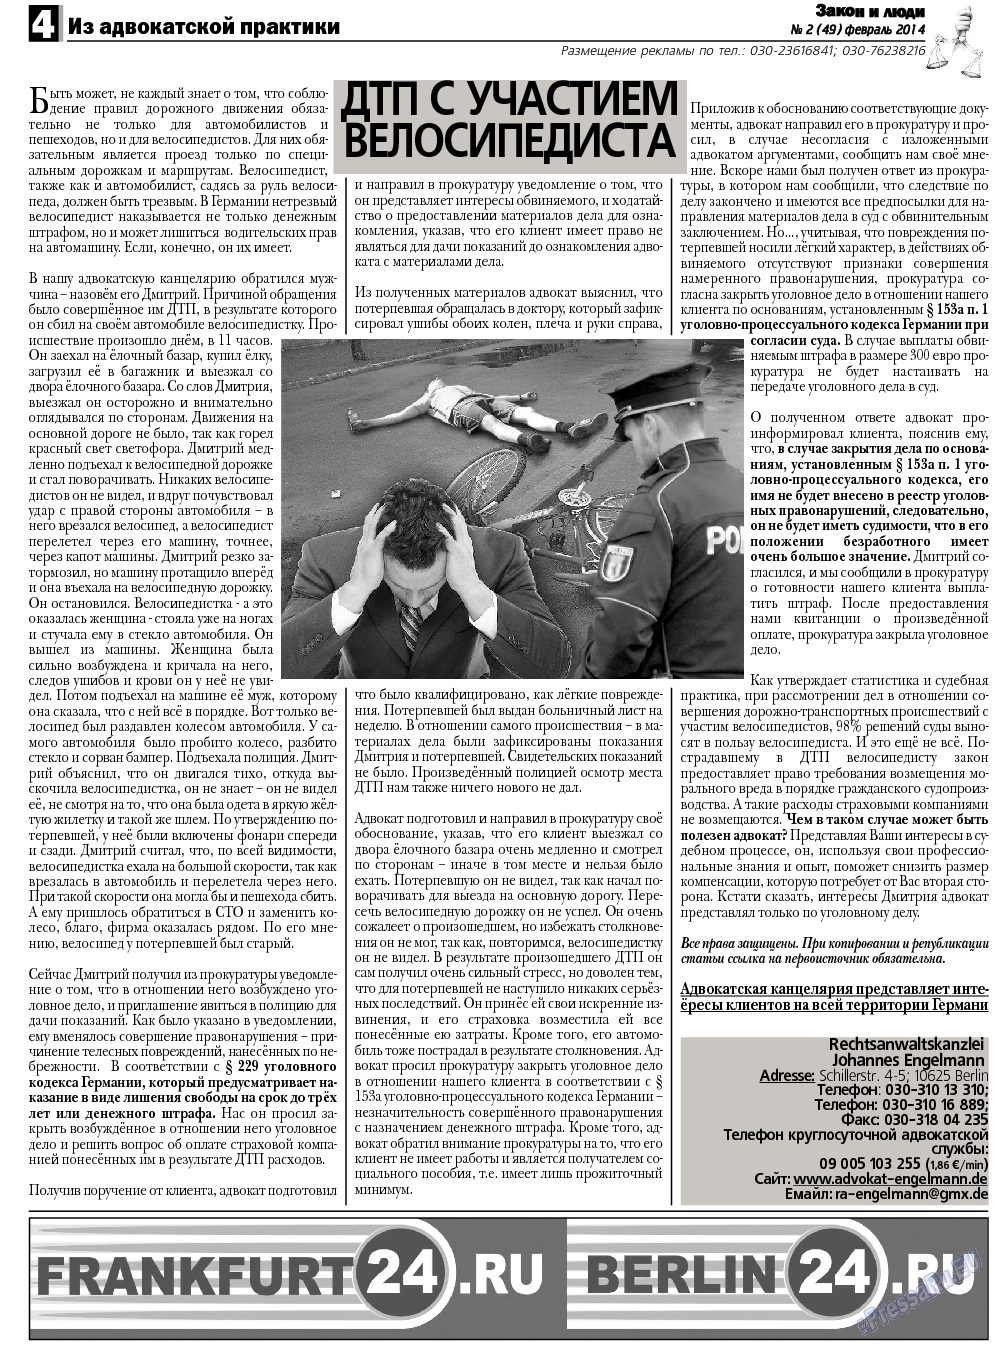 Закон и люди, газета. 2014 №2 стр.4